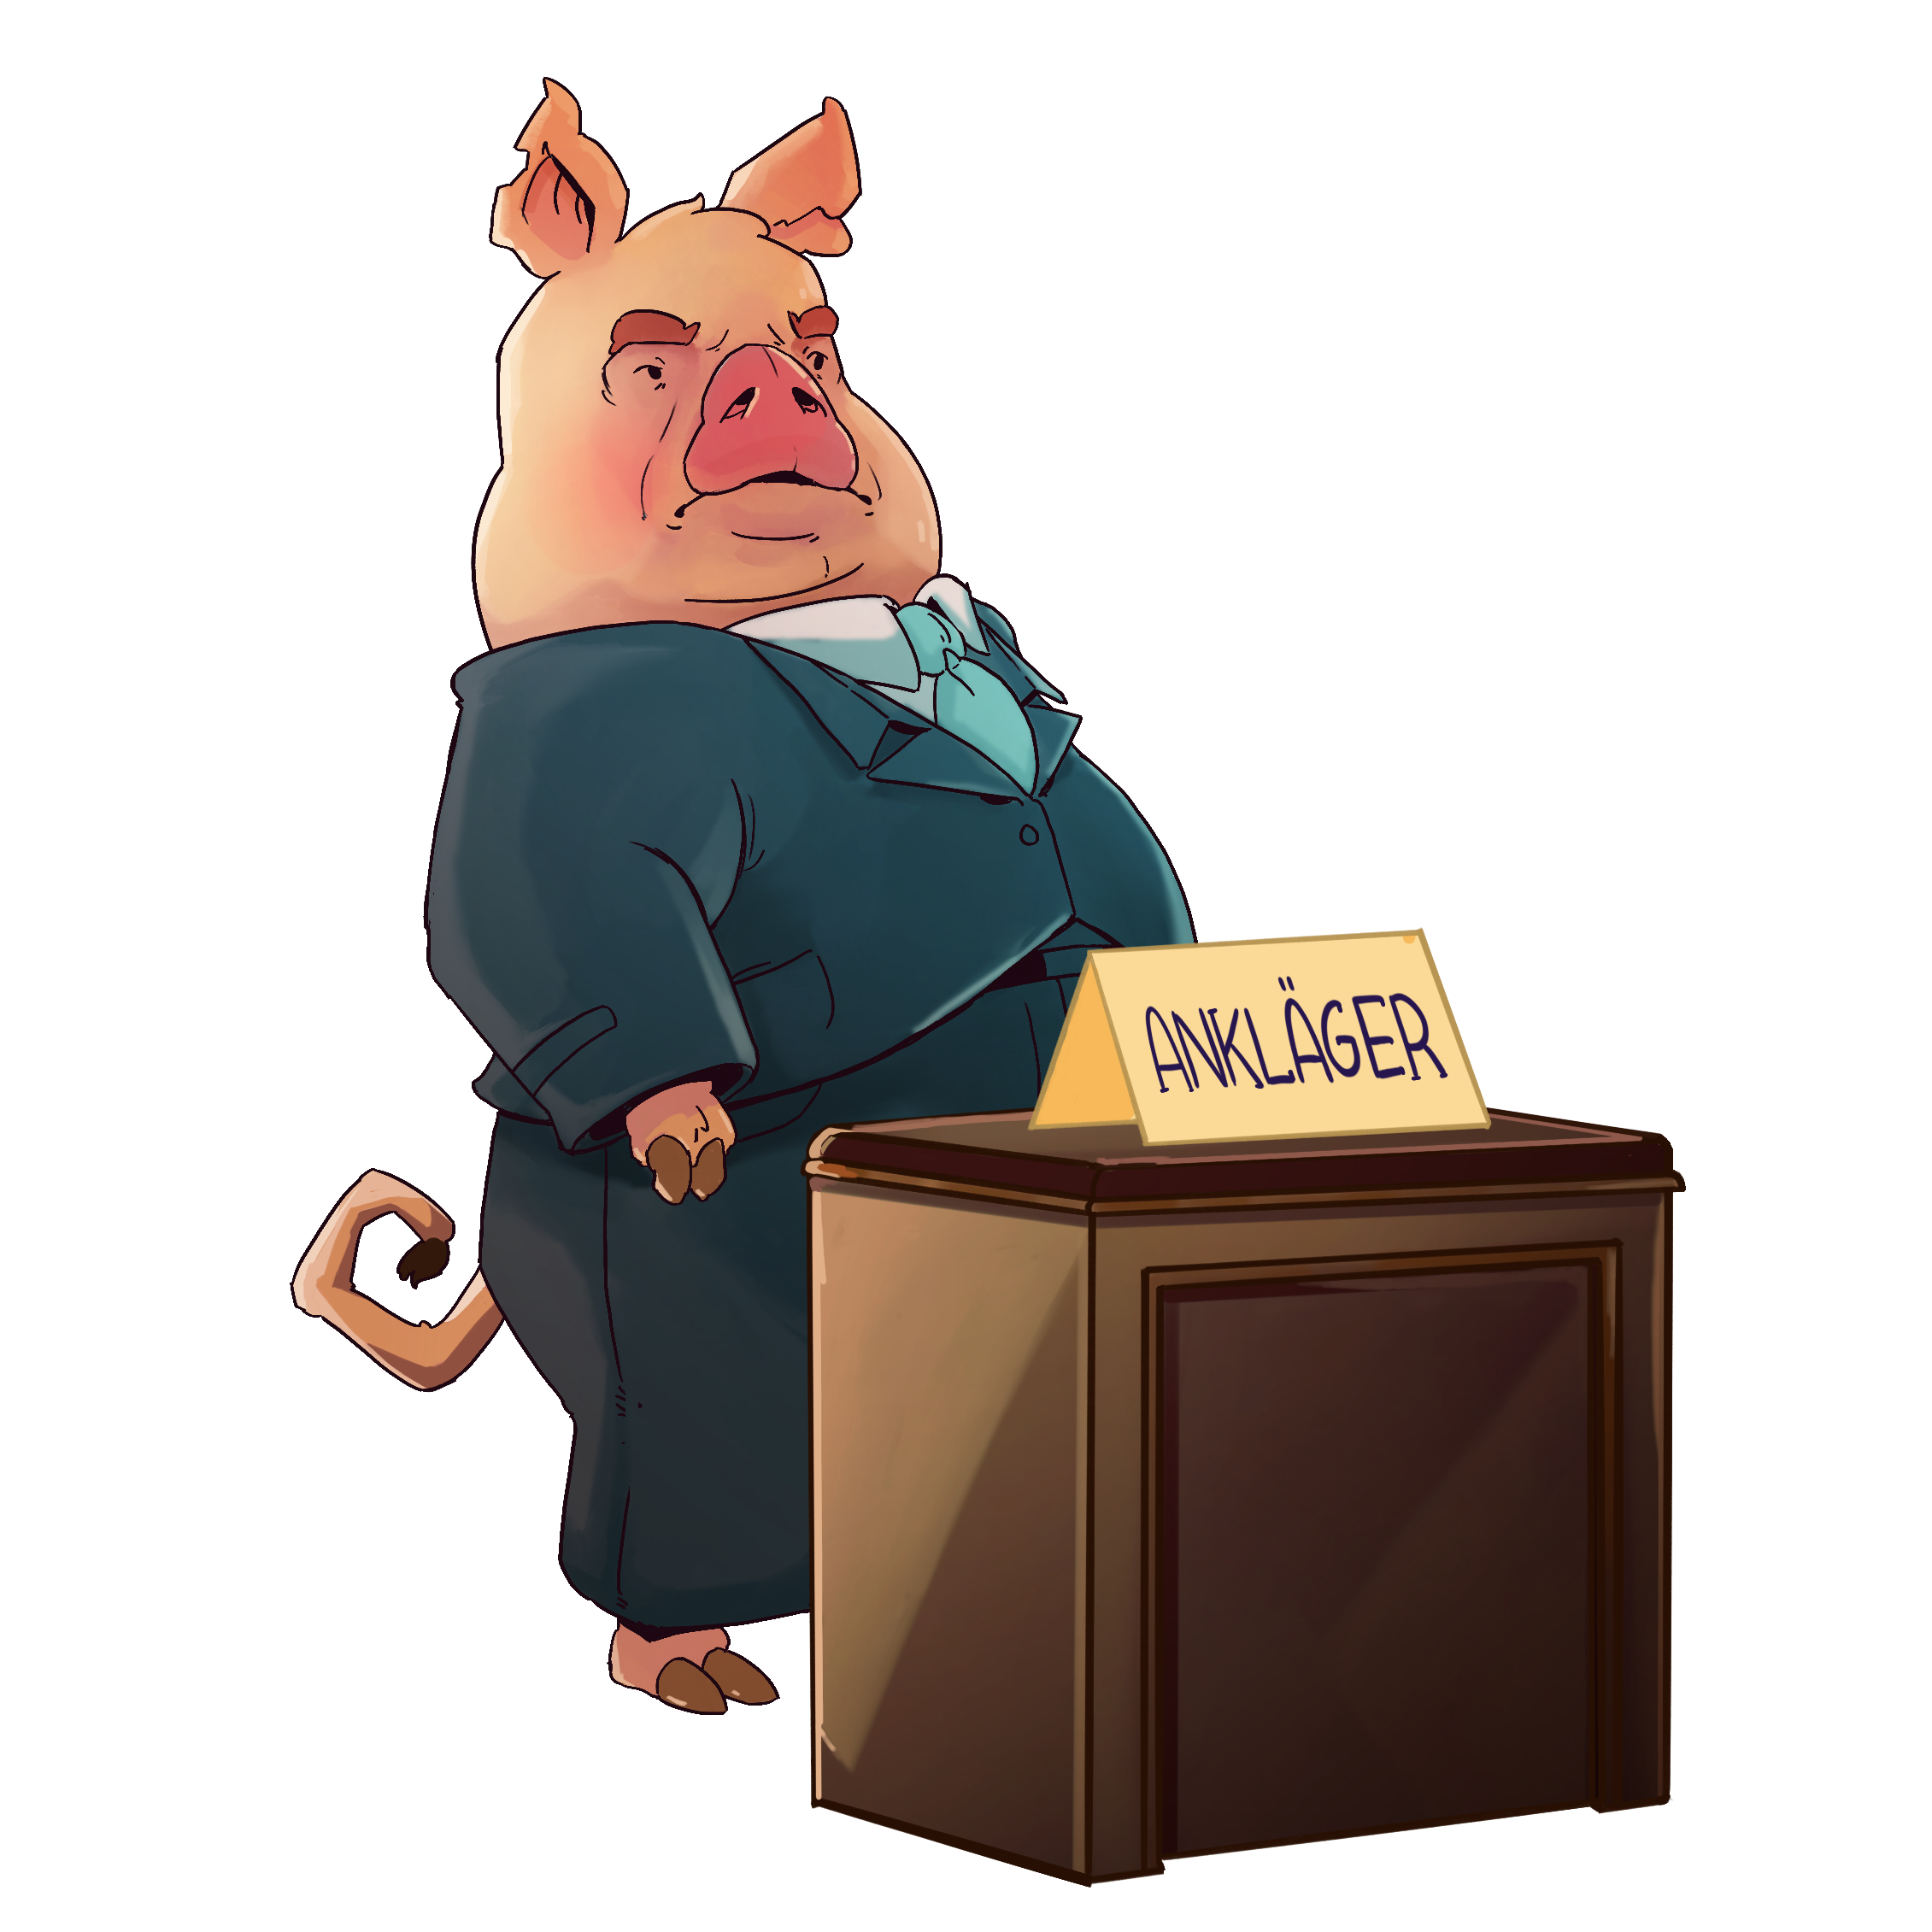 Illustration eines Schweins als Ankläger vor Gericht - Ironie und Absurdität von Tieren in menschlichen Rollen